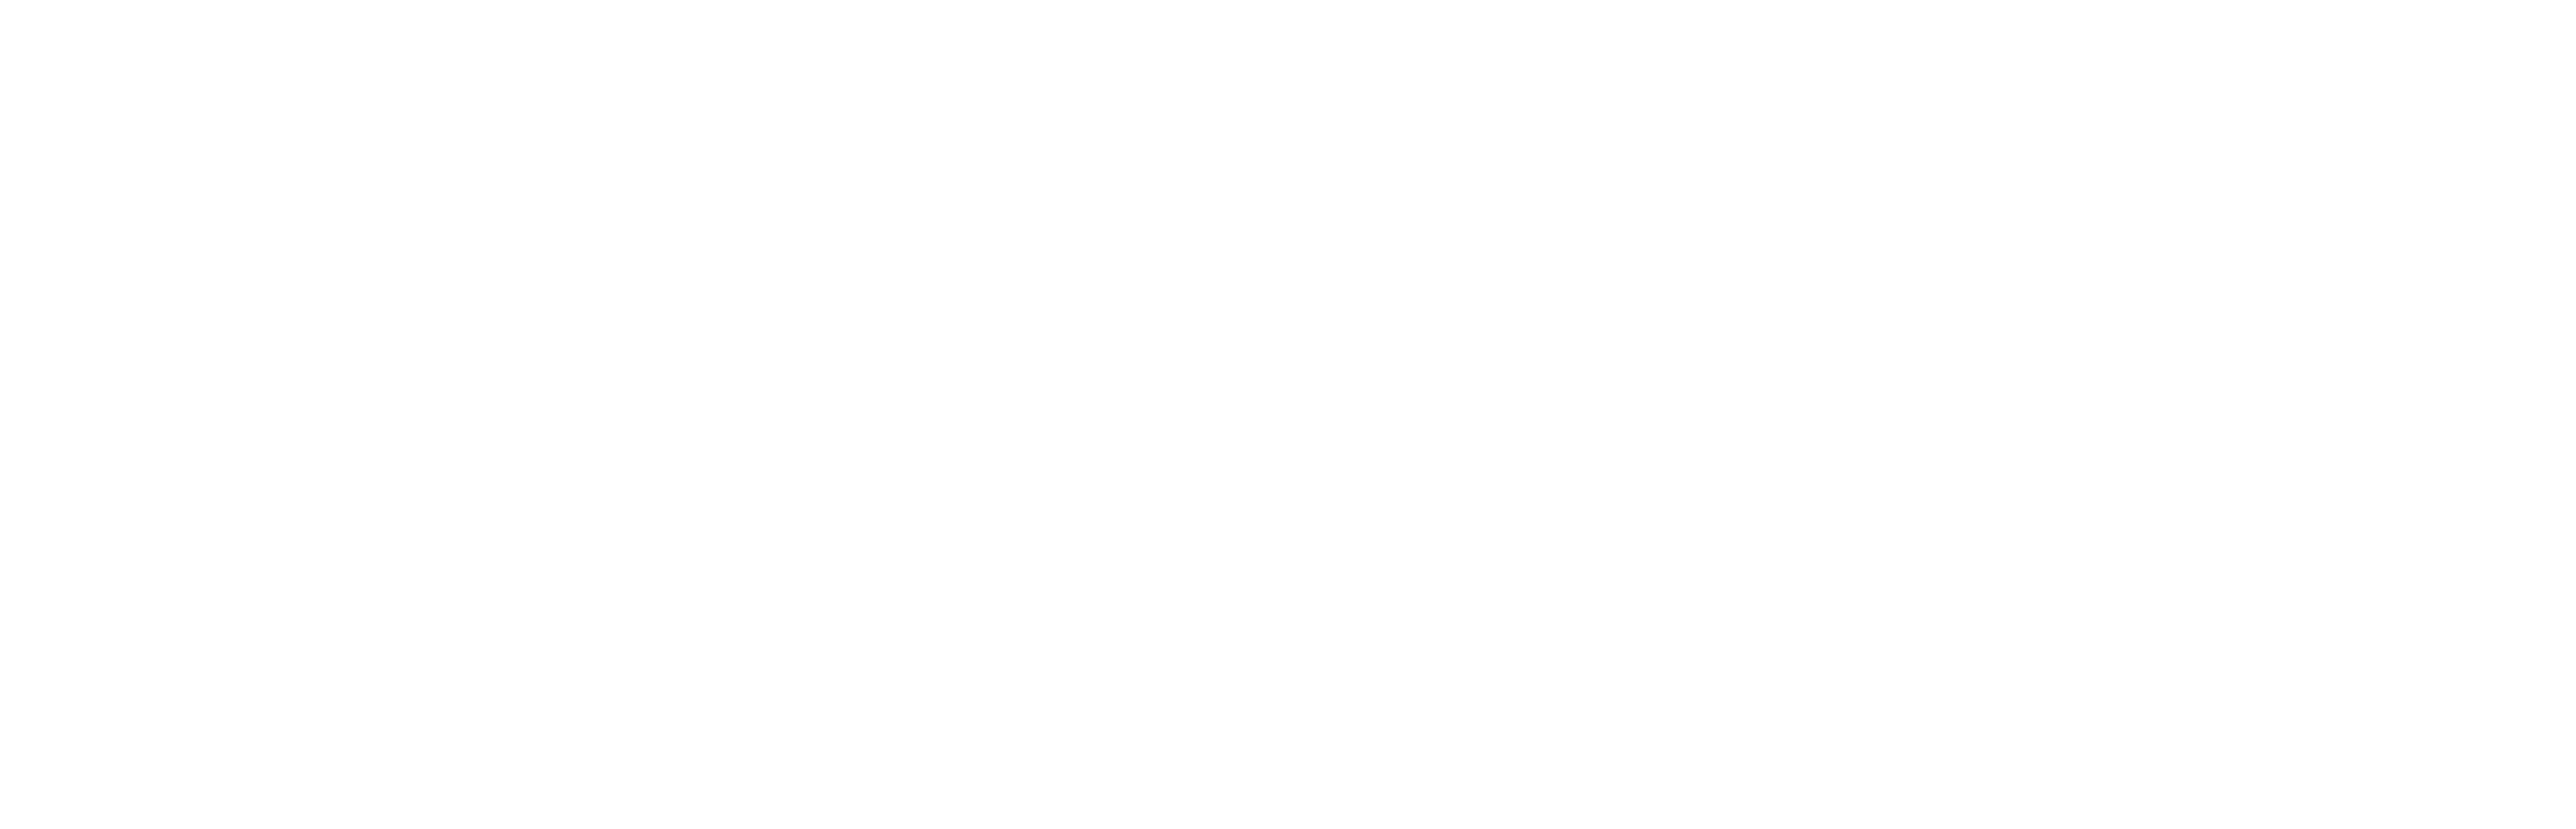 AniCura Istituto Veterinario Novara s.r.l. (AniCura)